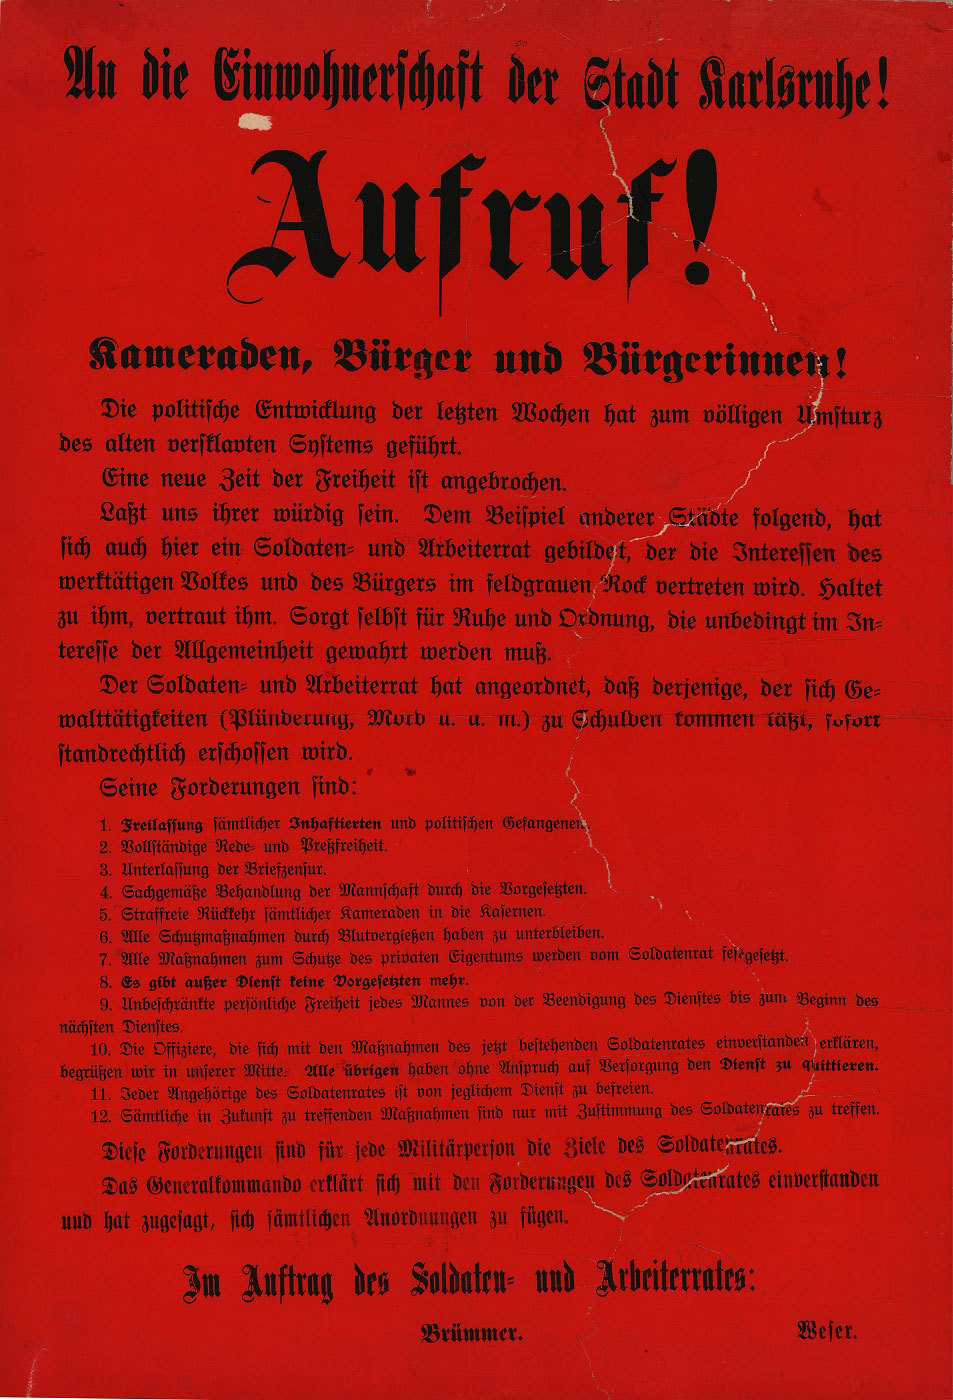 Bekanntmachung des Arbeiter- und Soldatenrates Karlsruhe aus dem Jahr 1918